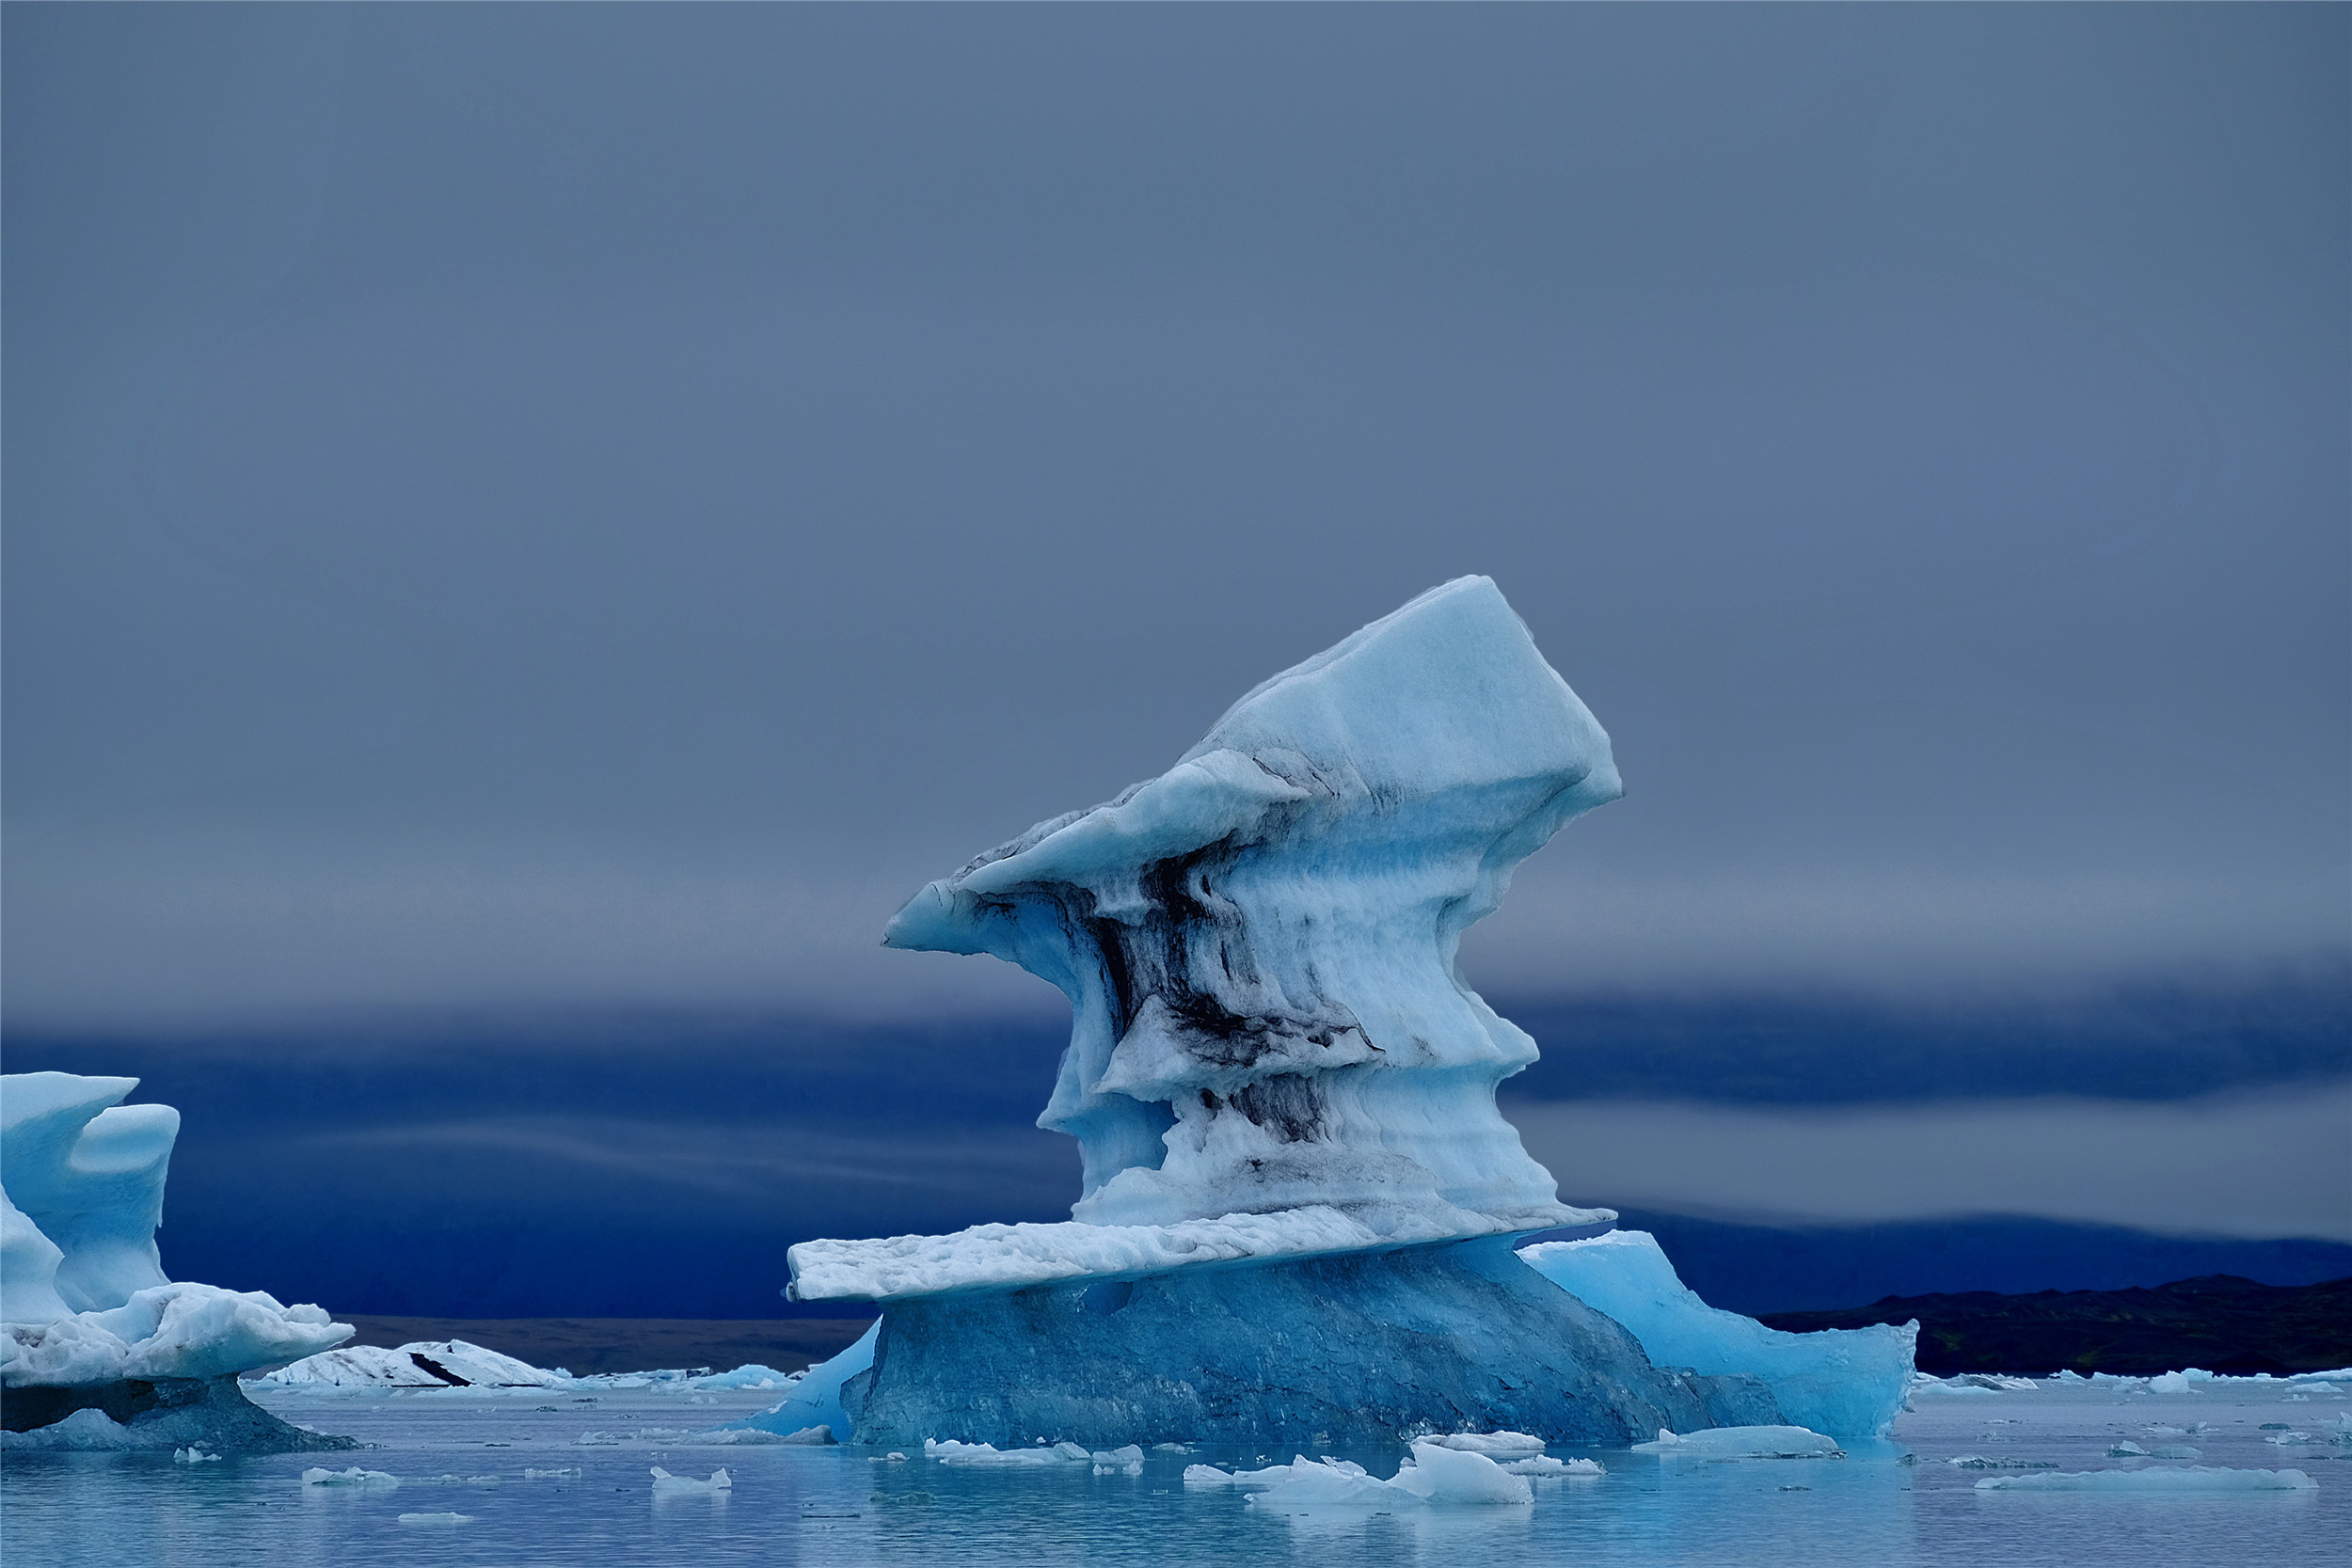 今日分享六张自然奇观美图:各种各样的冰山,形状不一,很神奇